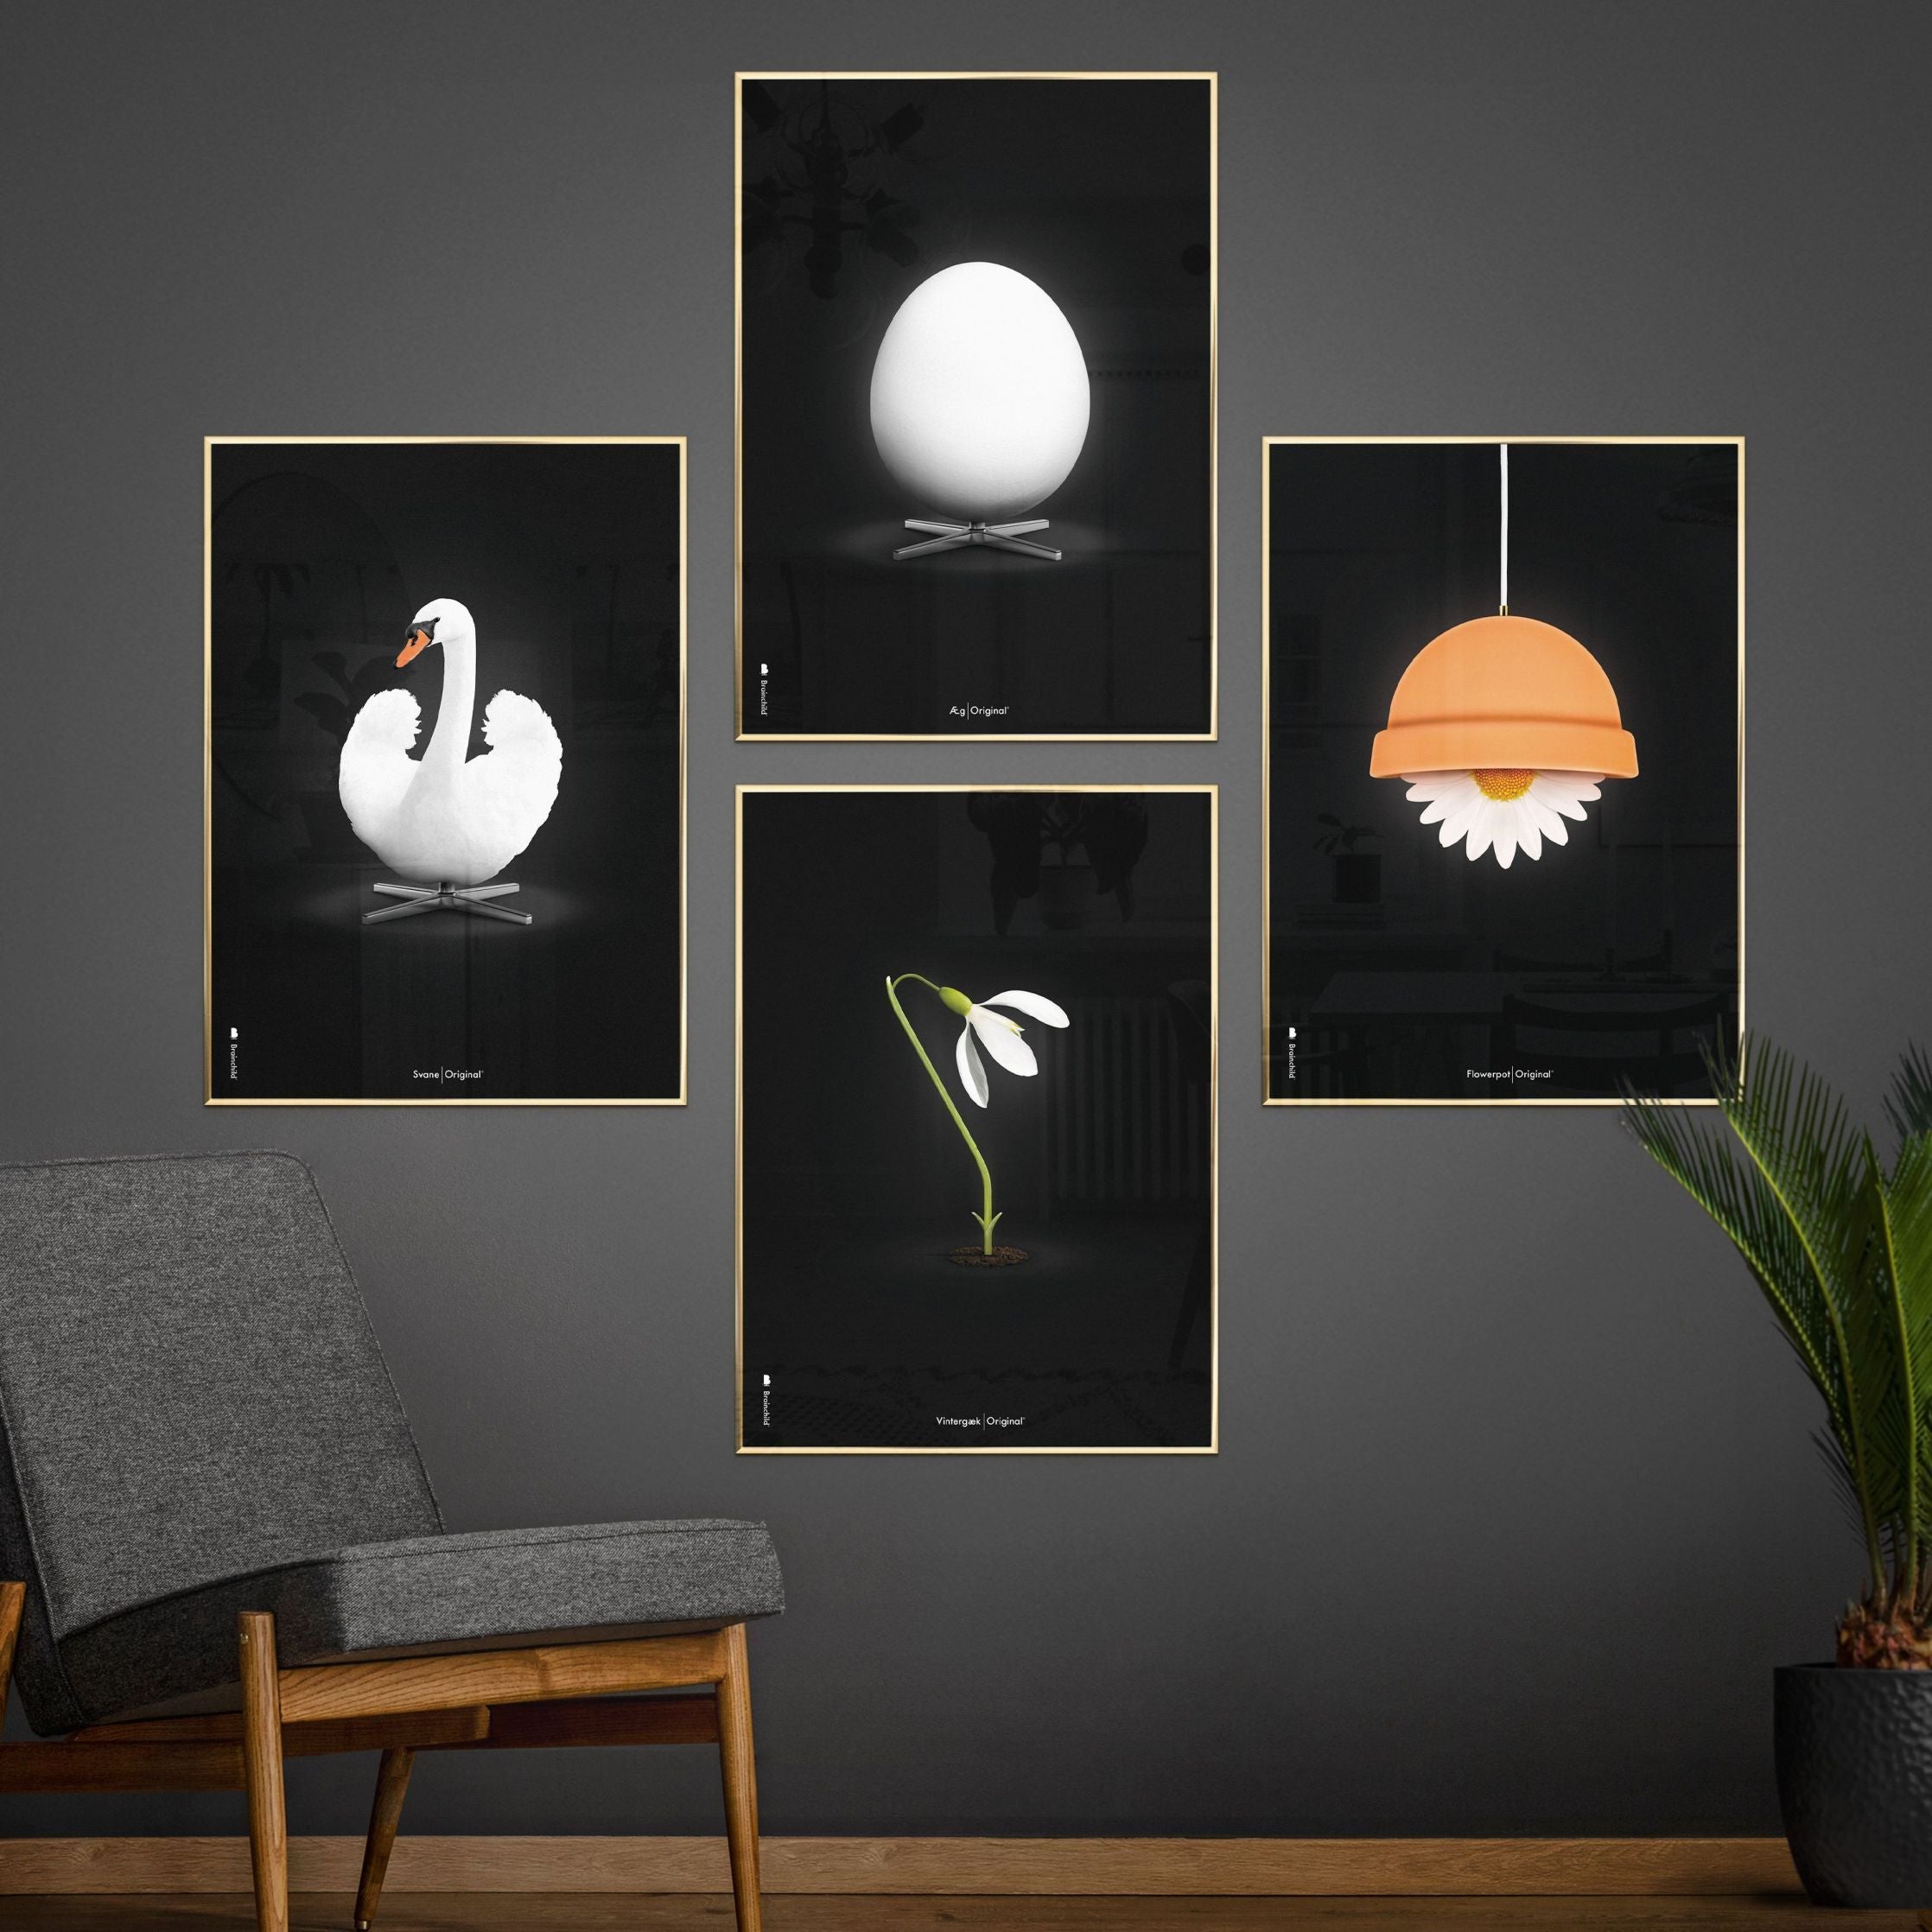 Klasický plakát s labutí mozek, rám vyrobený z lehkého dřeva 30x40 cm, bílé/bílé pozadí